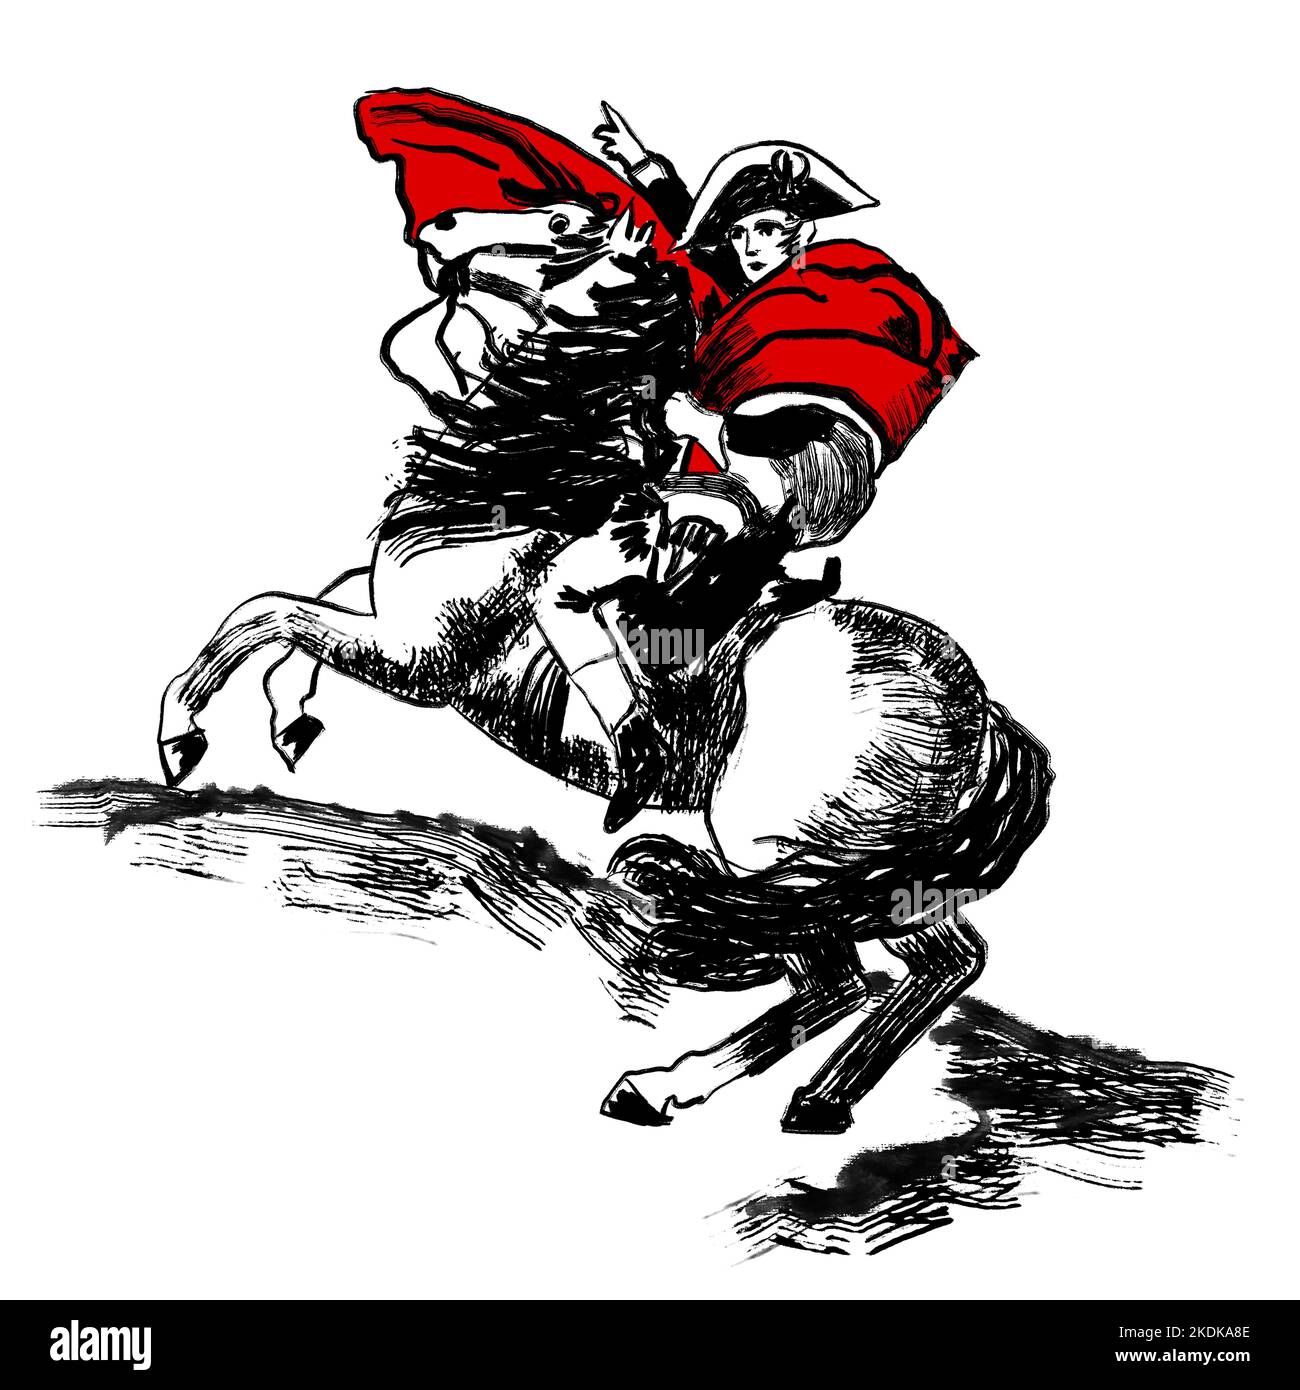 Napoléon traversant les alpes, empereur bonaparte français à cheval, croquis de david. Illustration d'esquisse à l'encre noire blanche, dessin minimaliste avec traits de pinceau simples Banque D'Images